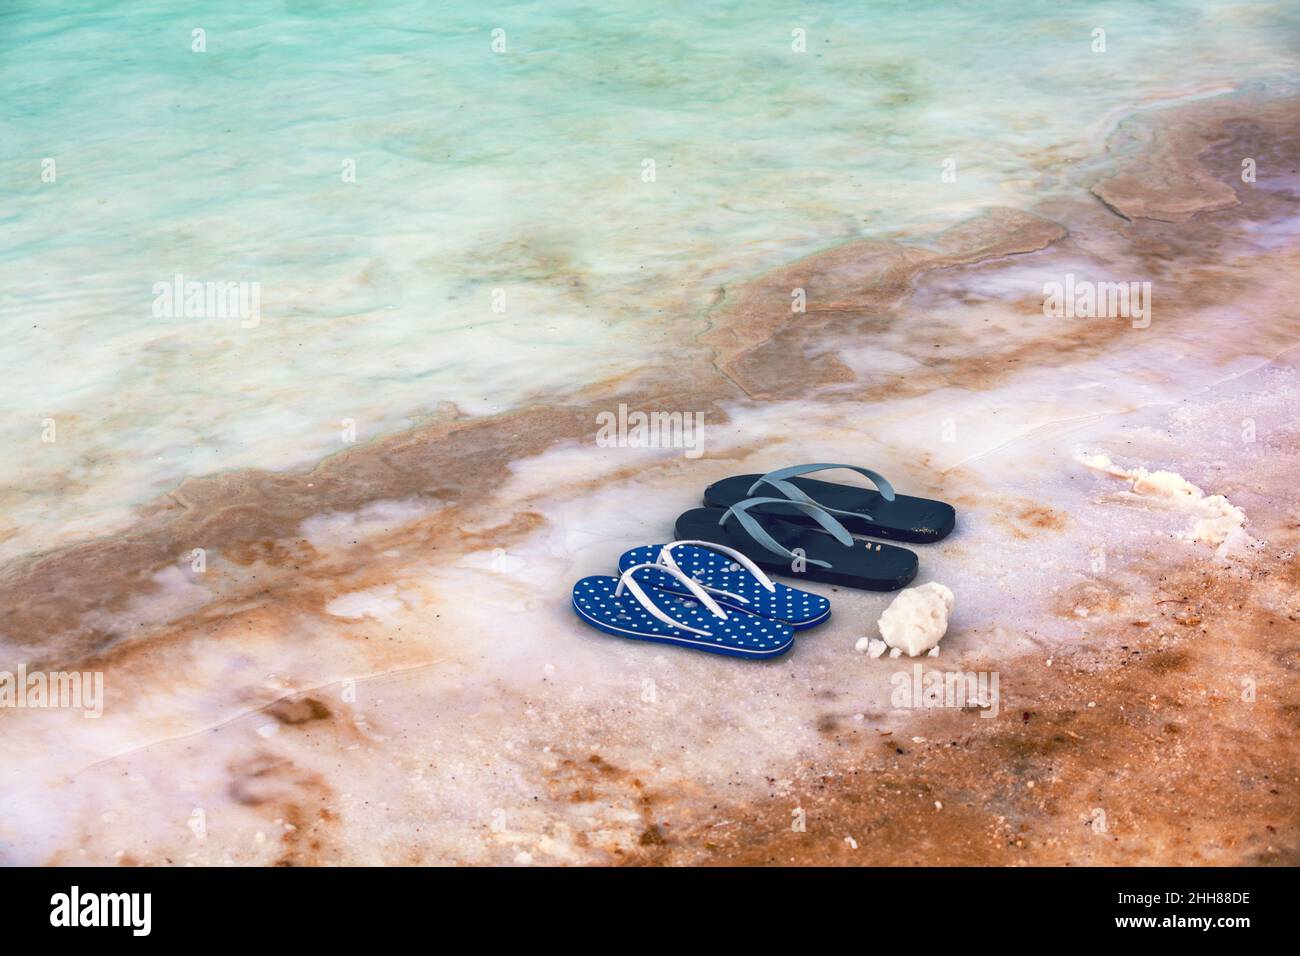 Spiaggia scena Dead SEA Shore. Sandali flip flop femmina e maschio sulla spiaggia Foto Stock